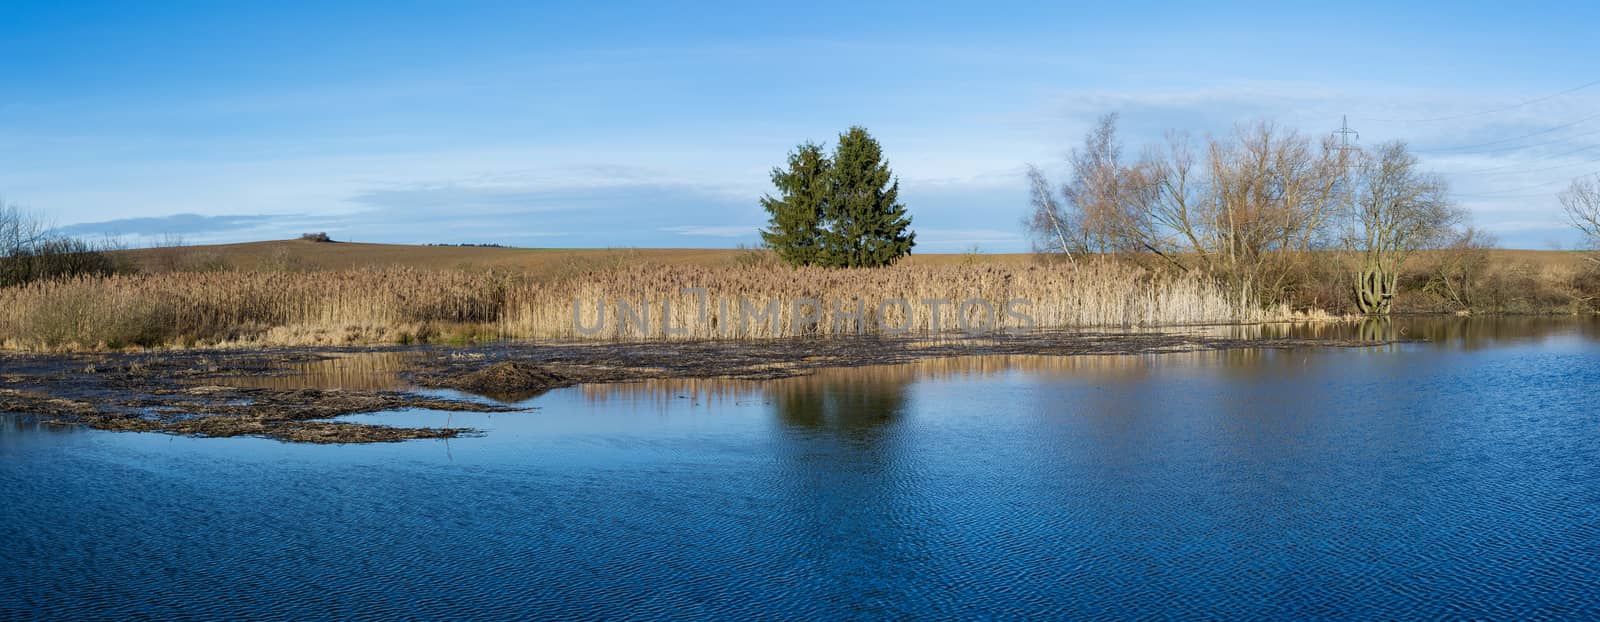 reeds at the pond in winter against blue sky, rural scene, landscape